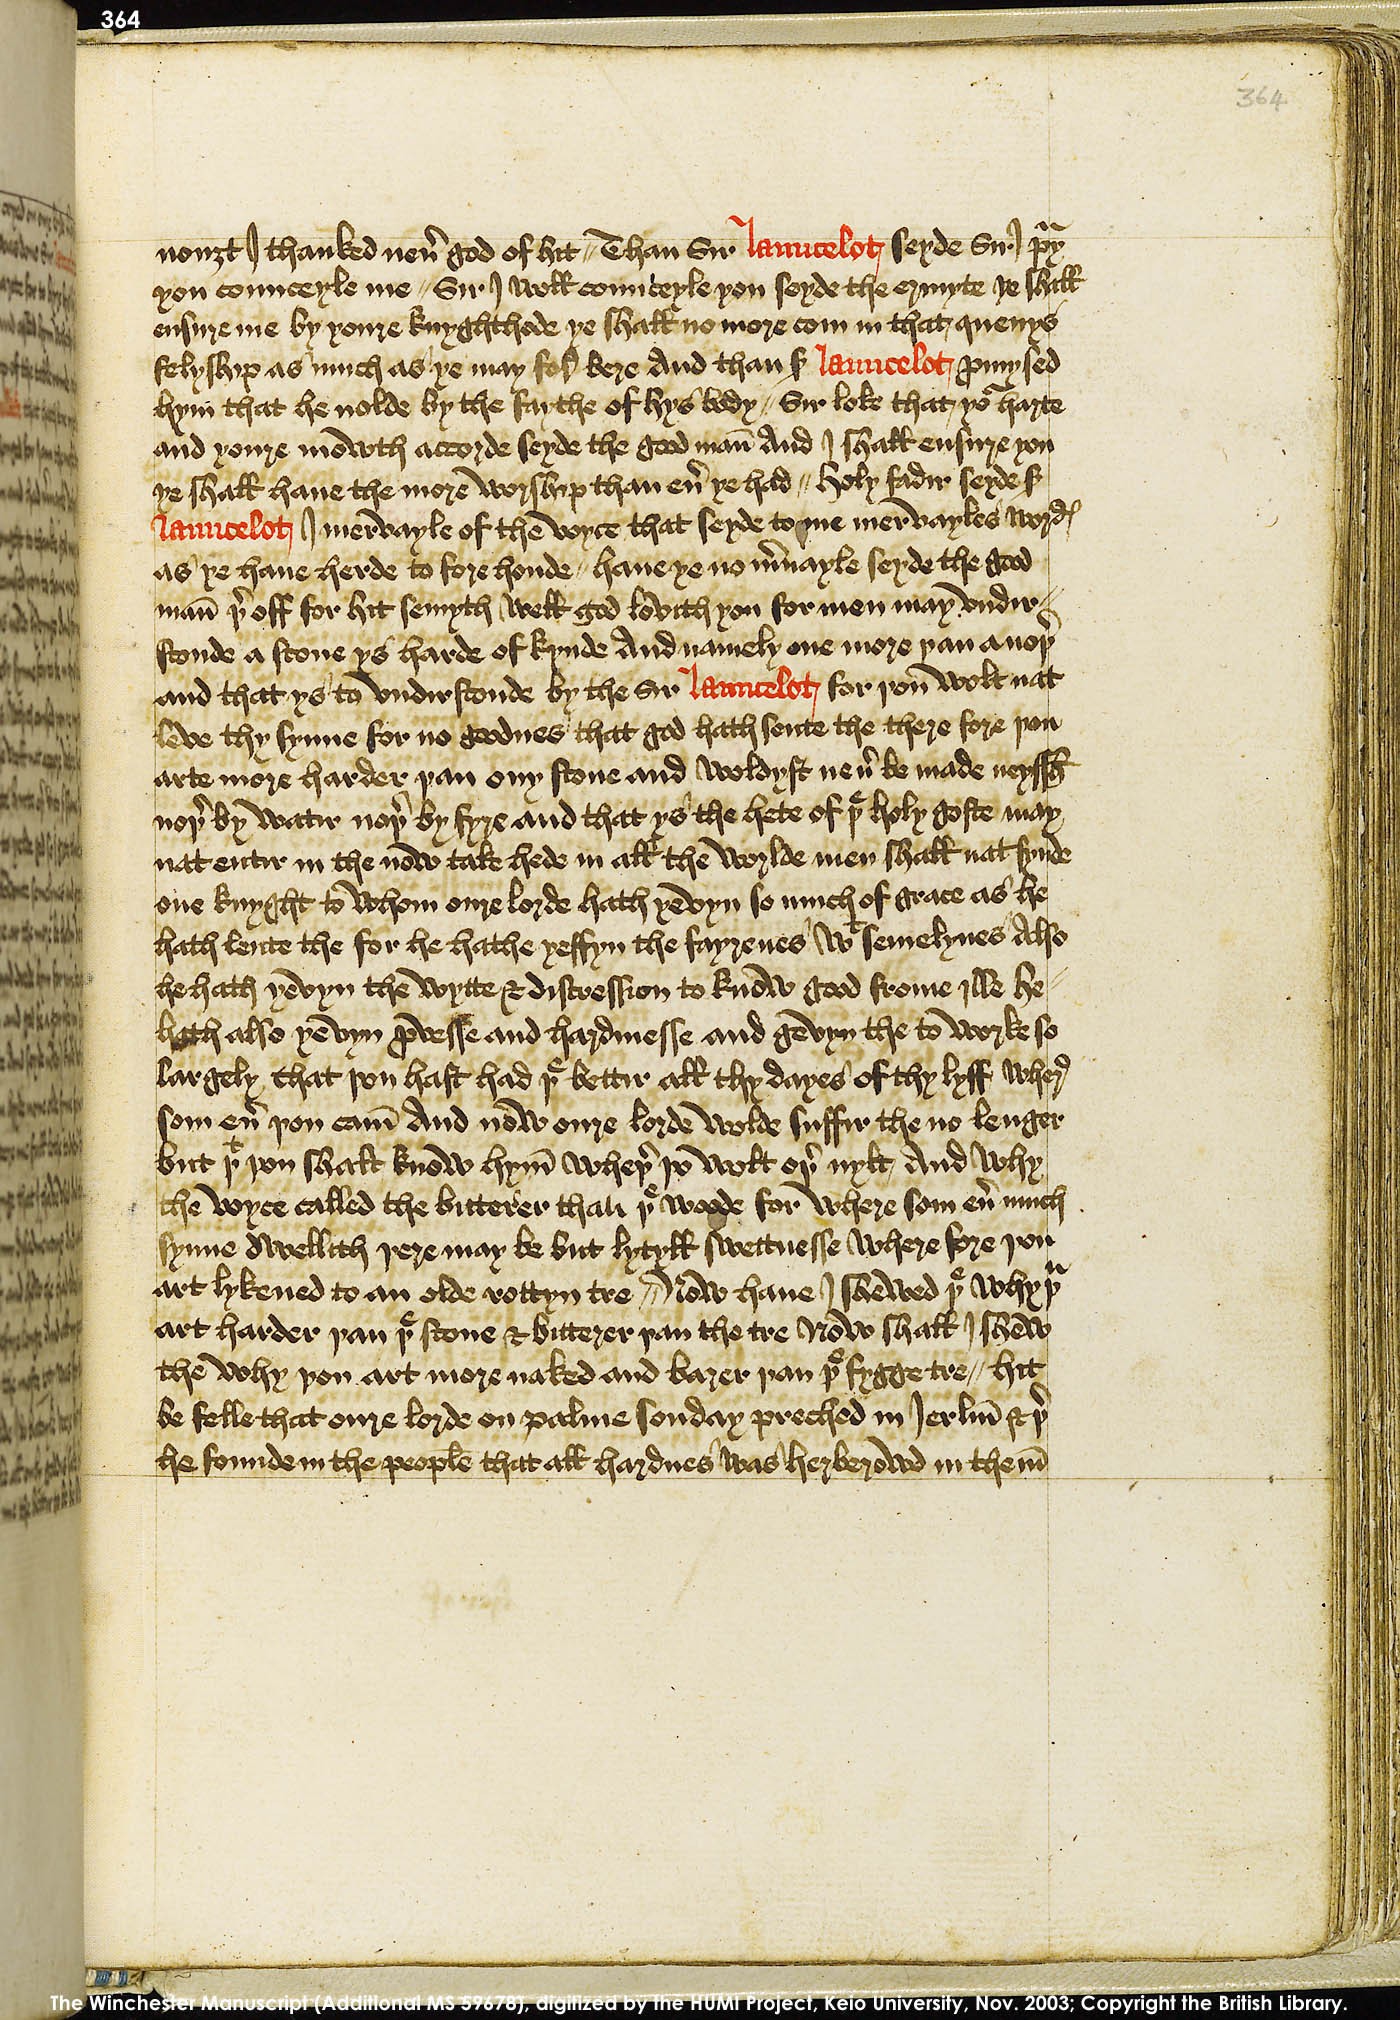 Folio 364r